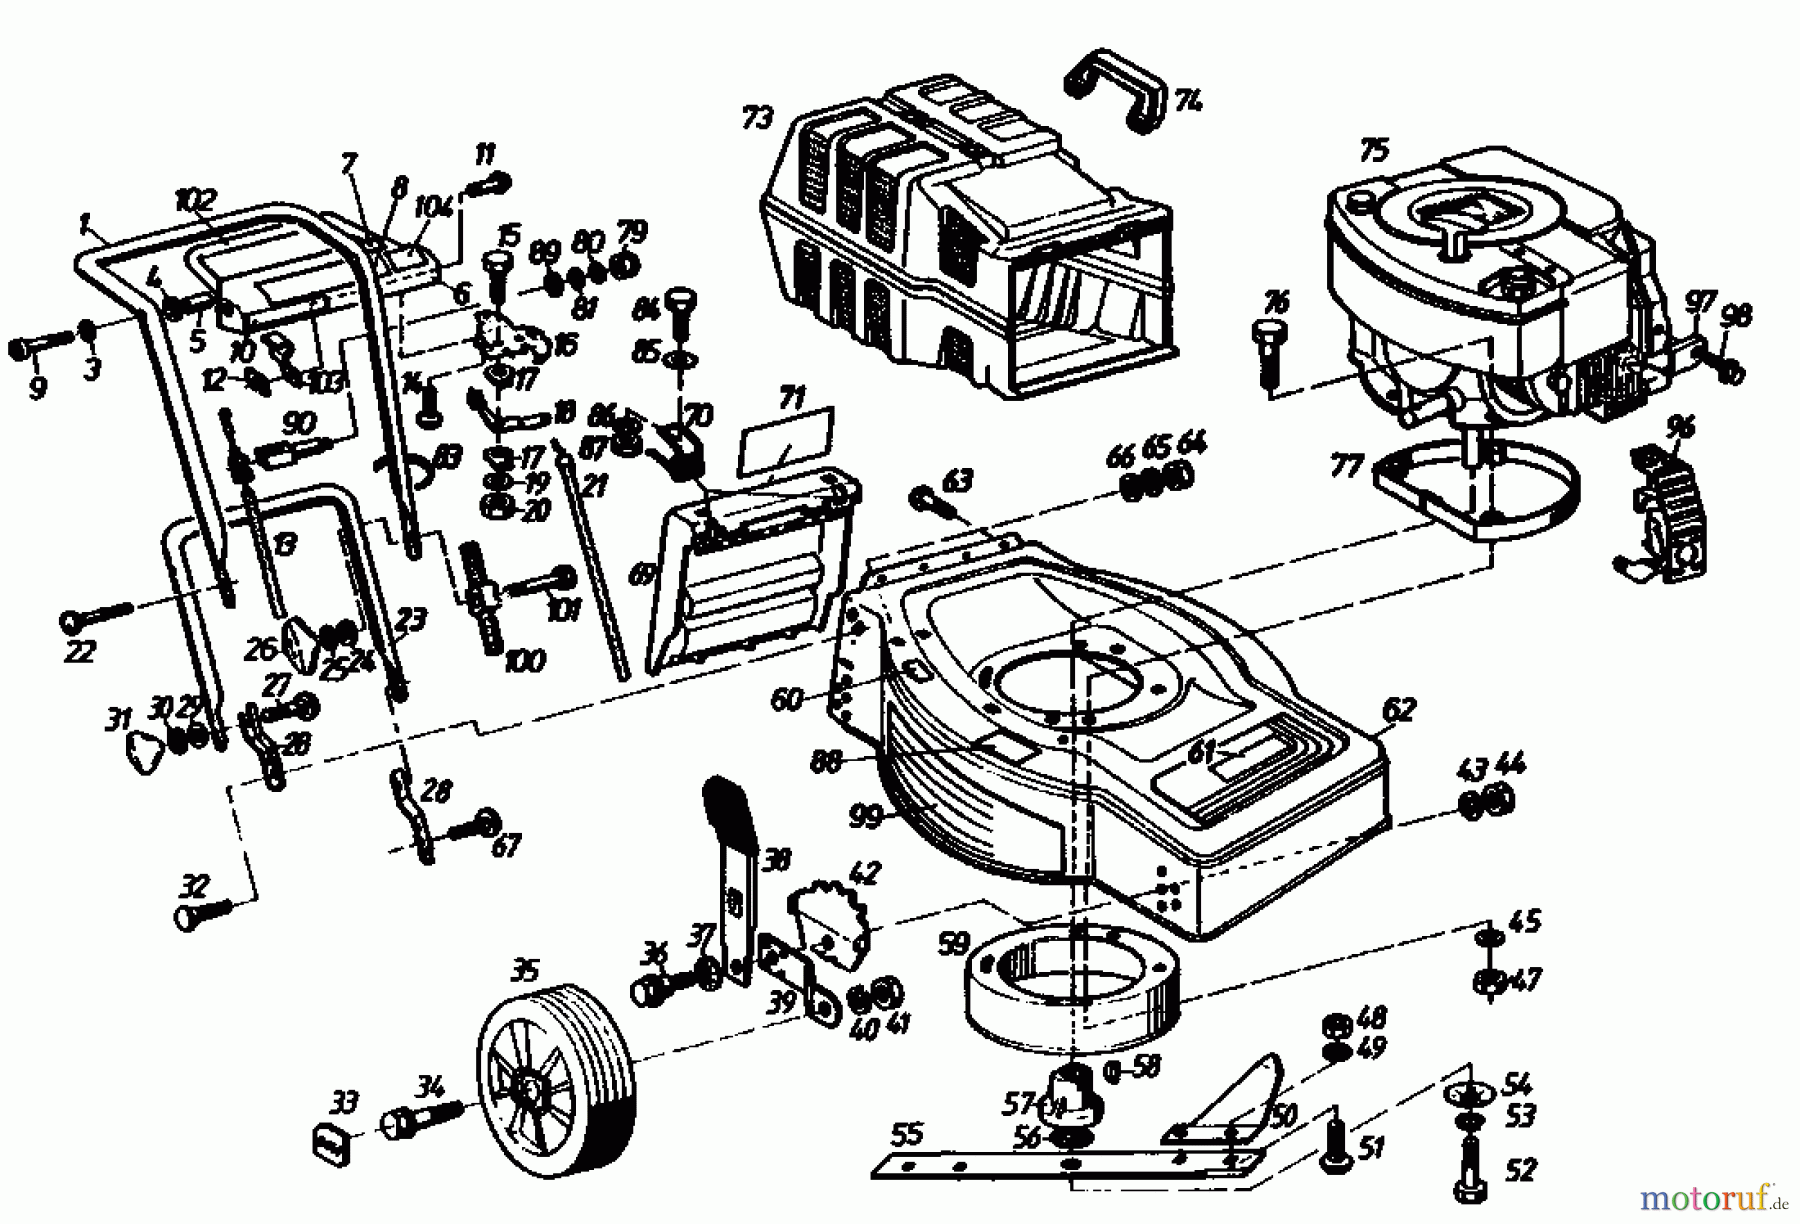  Golf Motormäher mit Antrieb 245 HR 4 02647.05  (1987) Grundgerät